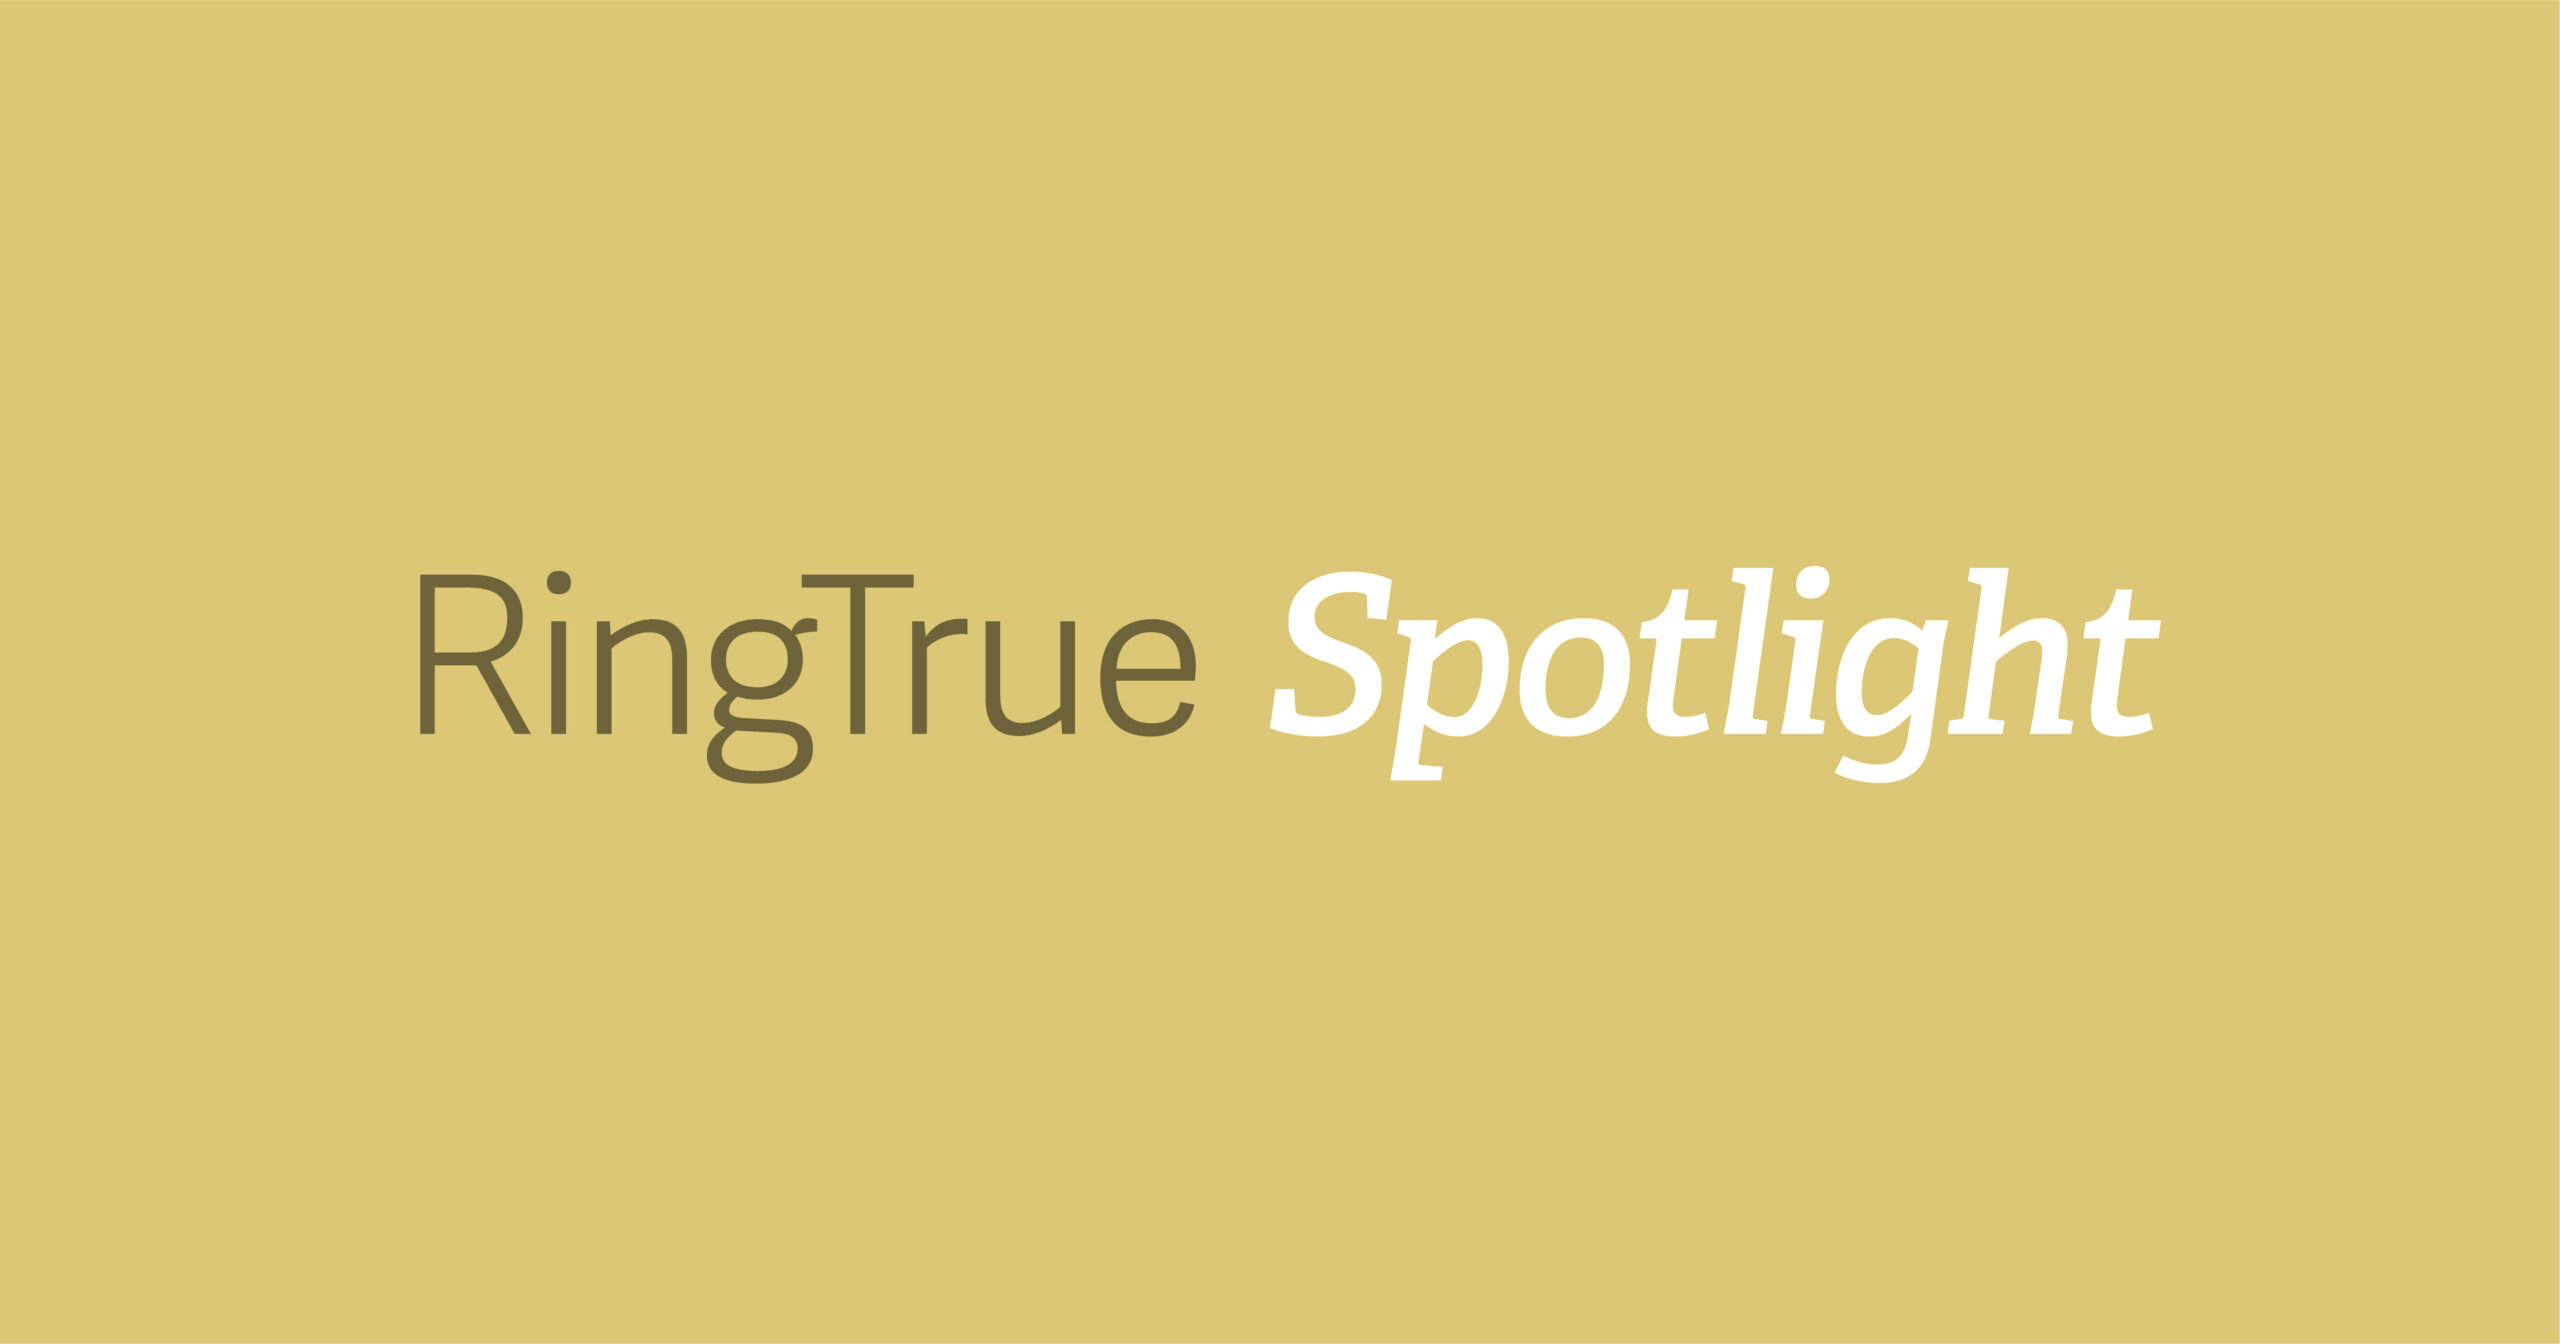 Ring True Spotlight: Luke Yaeger